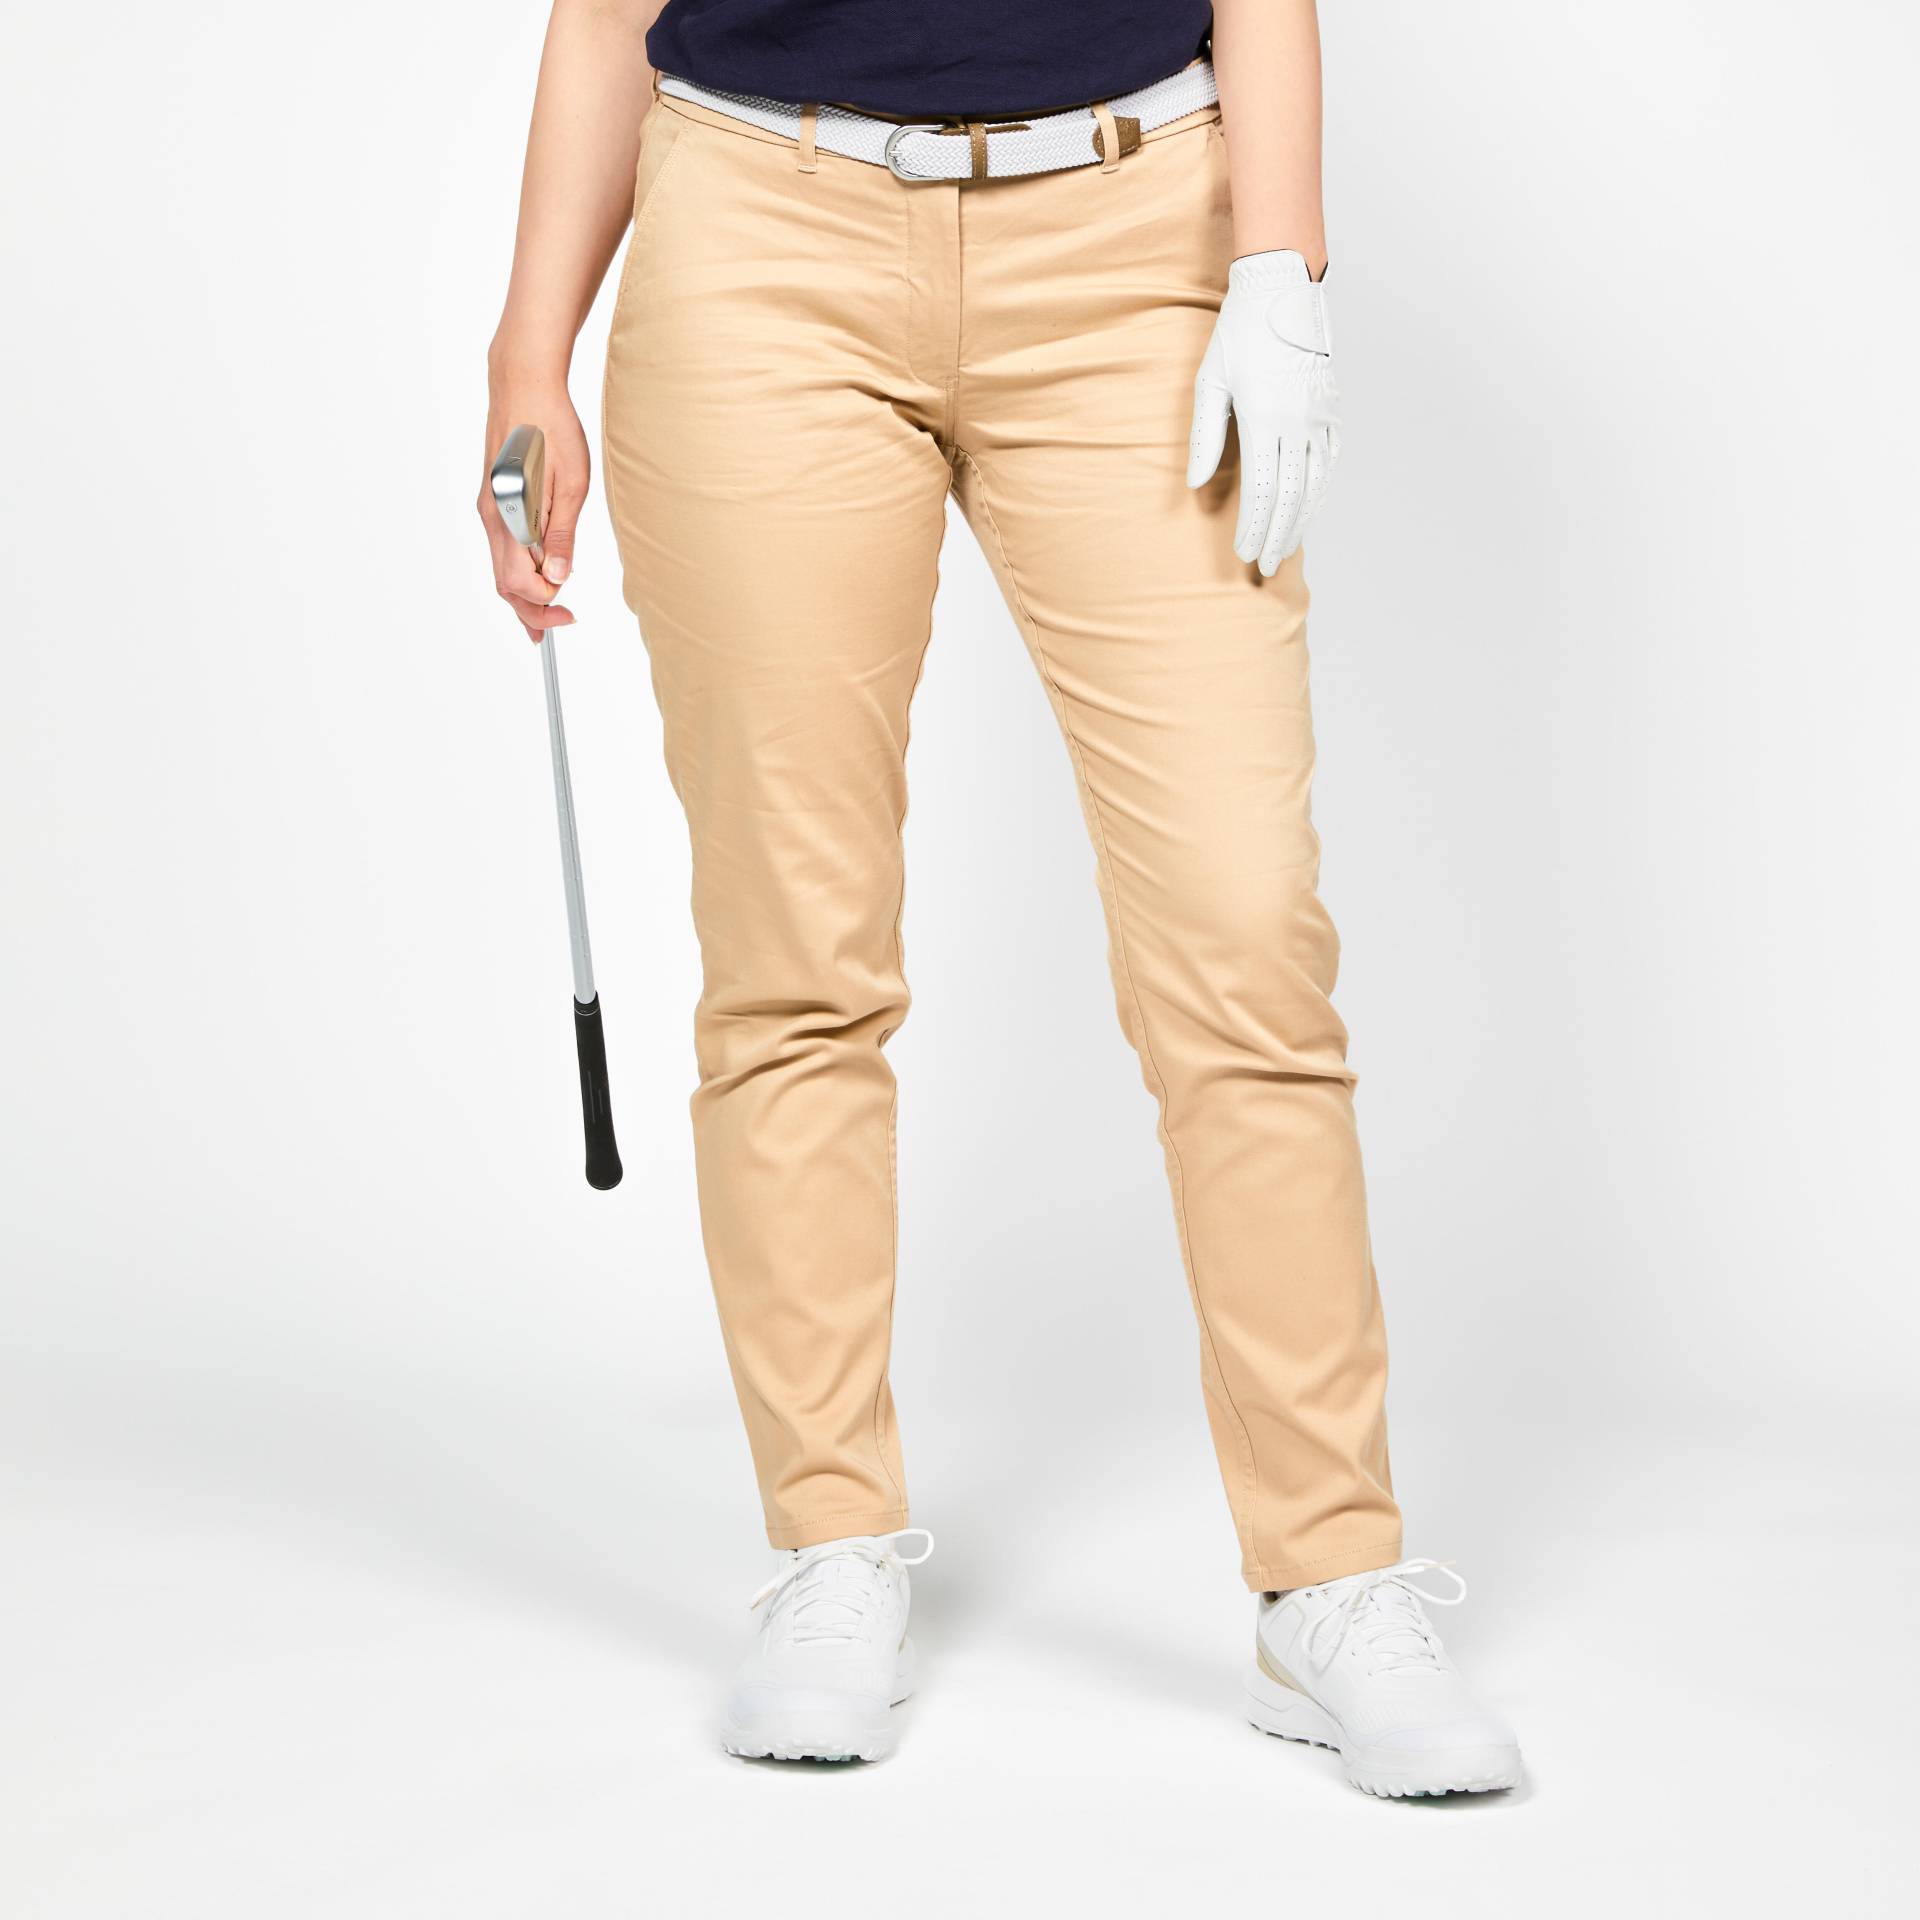 Damen Golf Hose Baumwolle - MW500 beige von INESIS